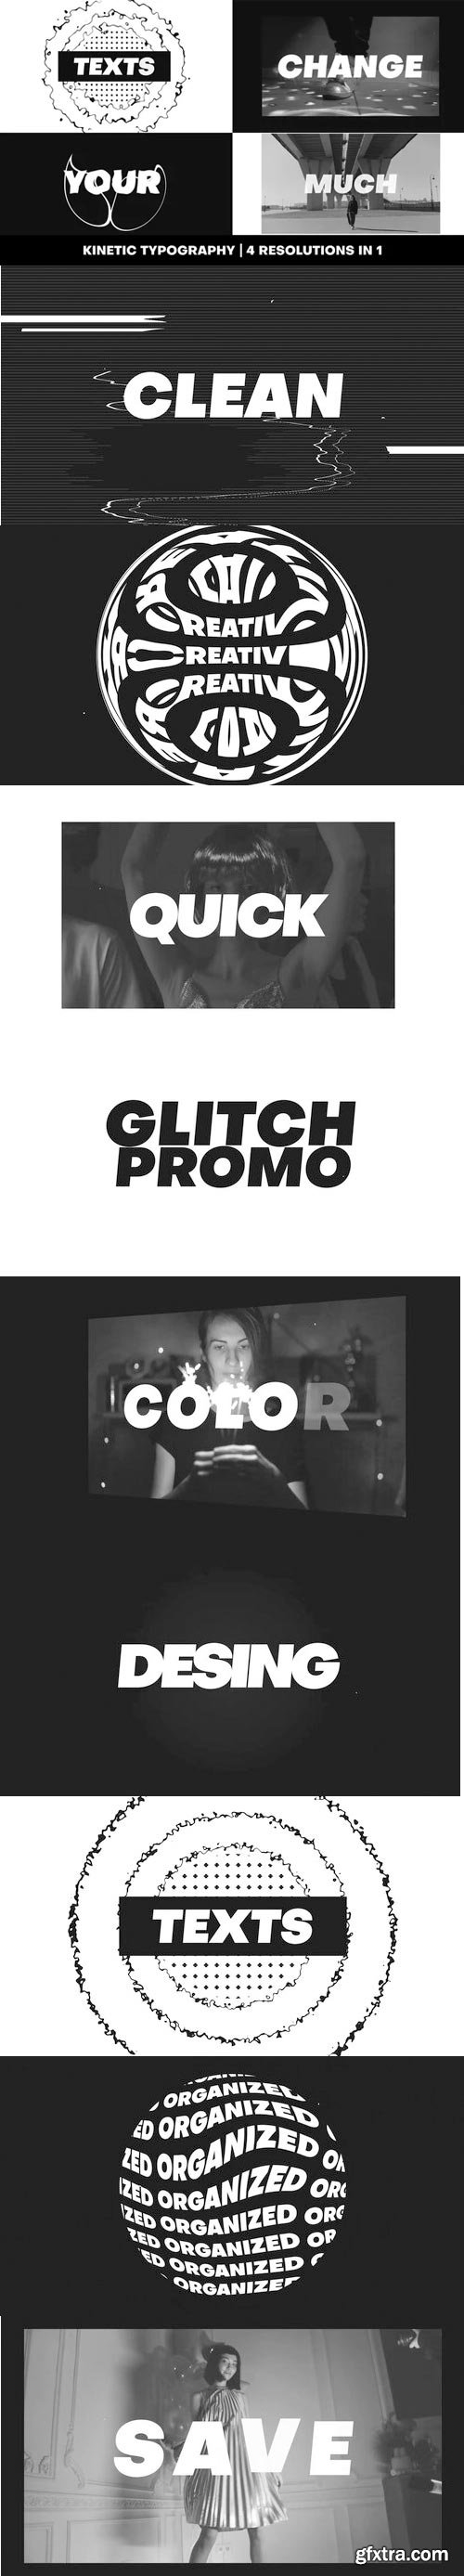 Videohive - Dynamic Glitch Promo - 31888982